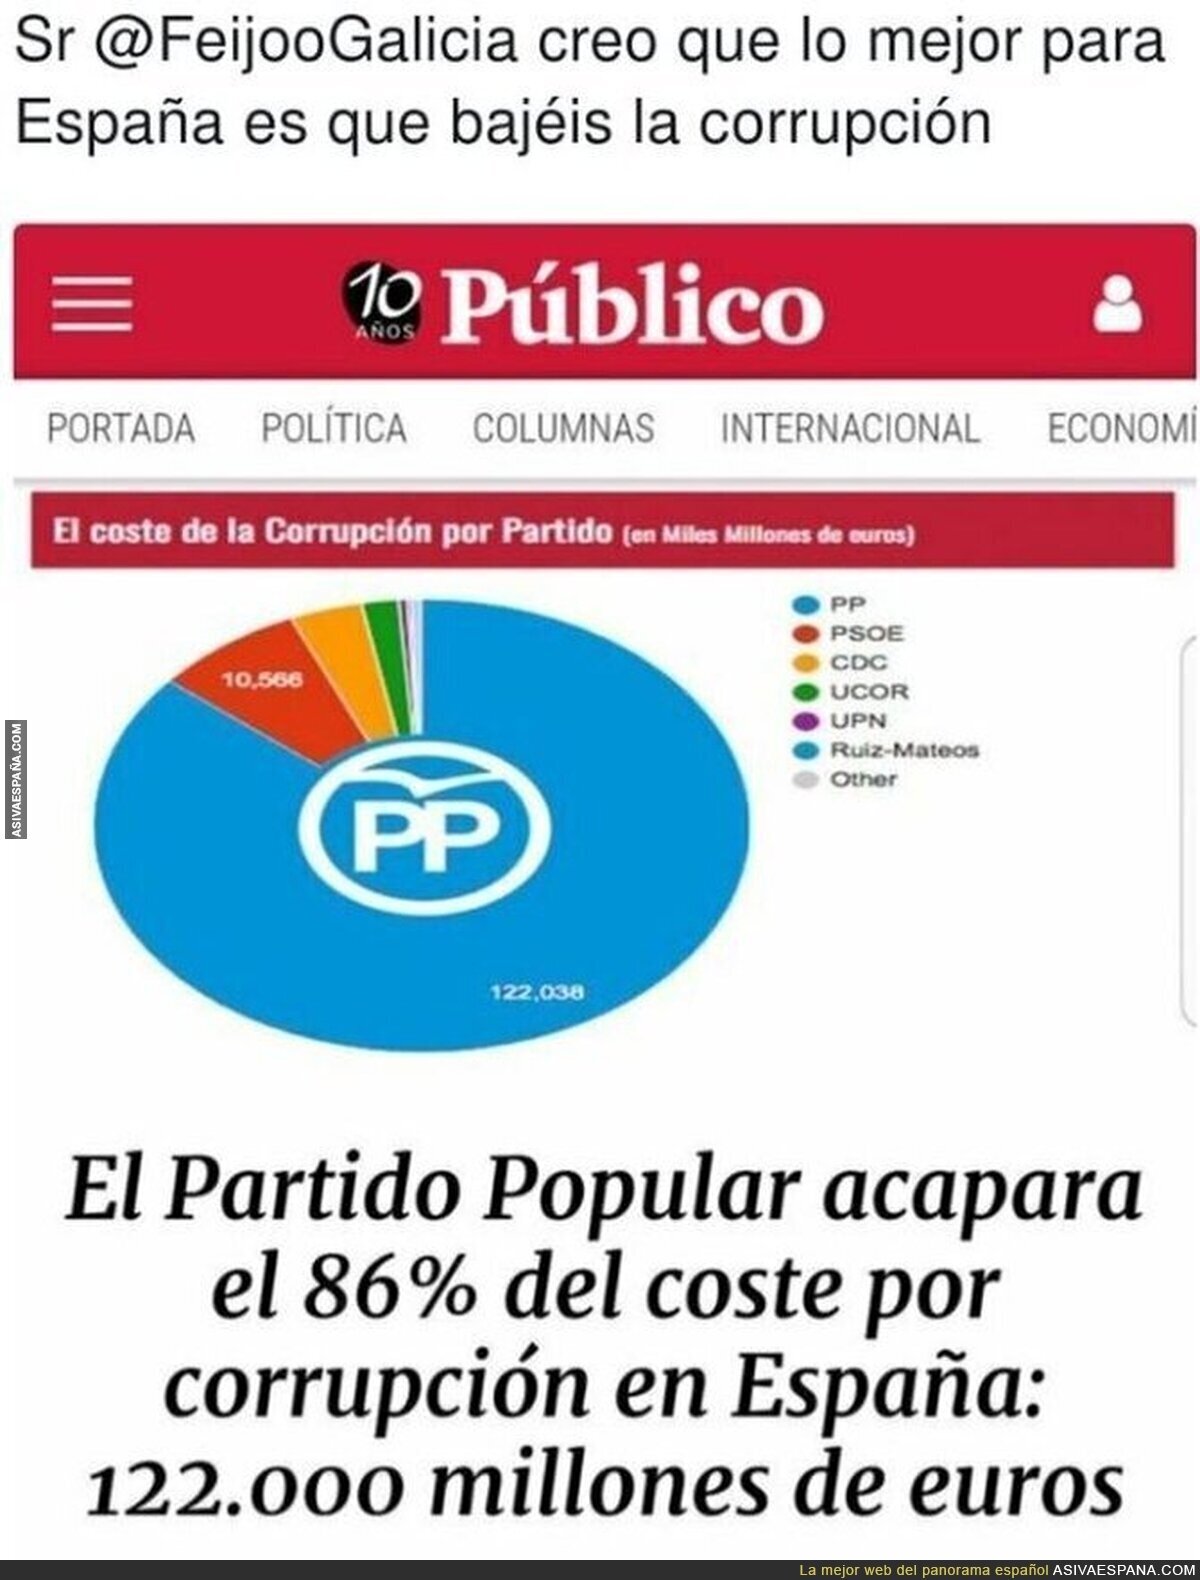 El lastre de España se llama PP